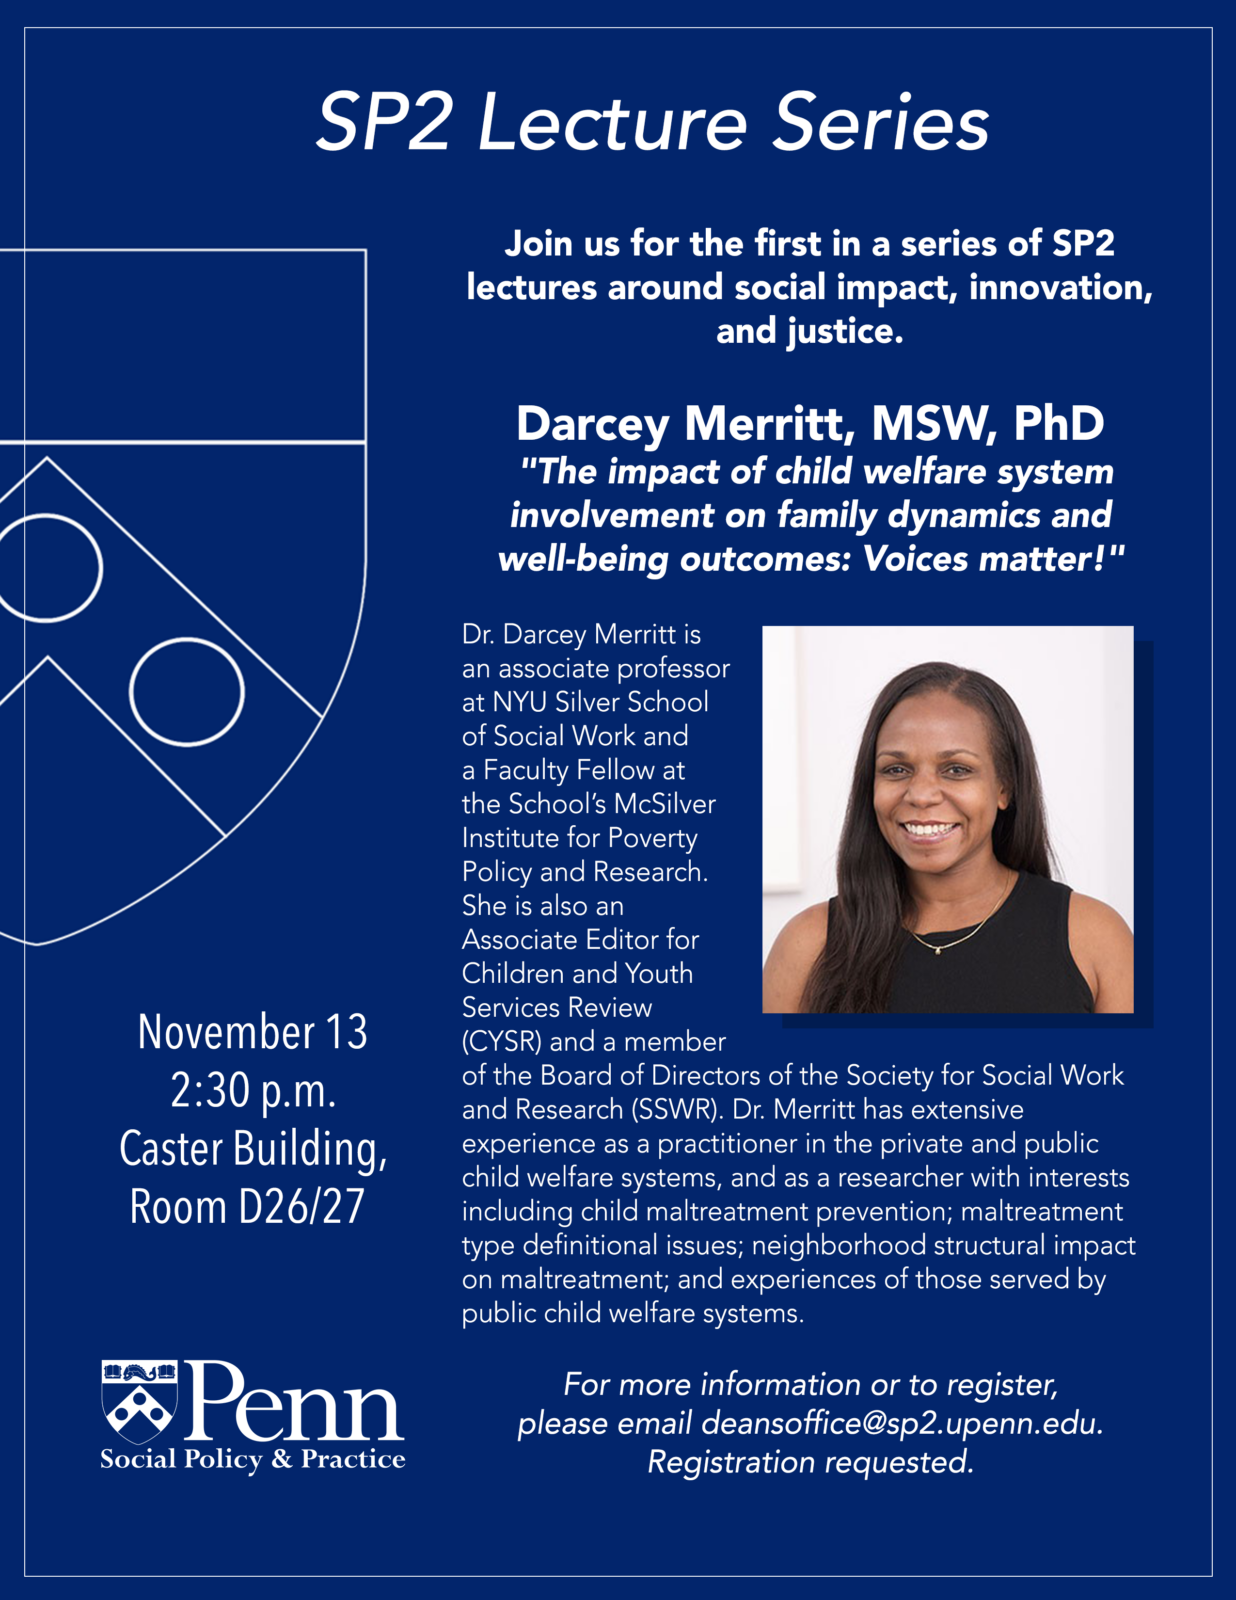 SP2 lecture series flyer - Darcey Merritt, MSW, PhD